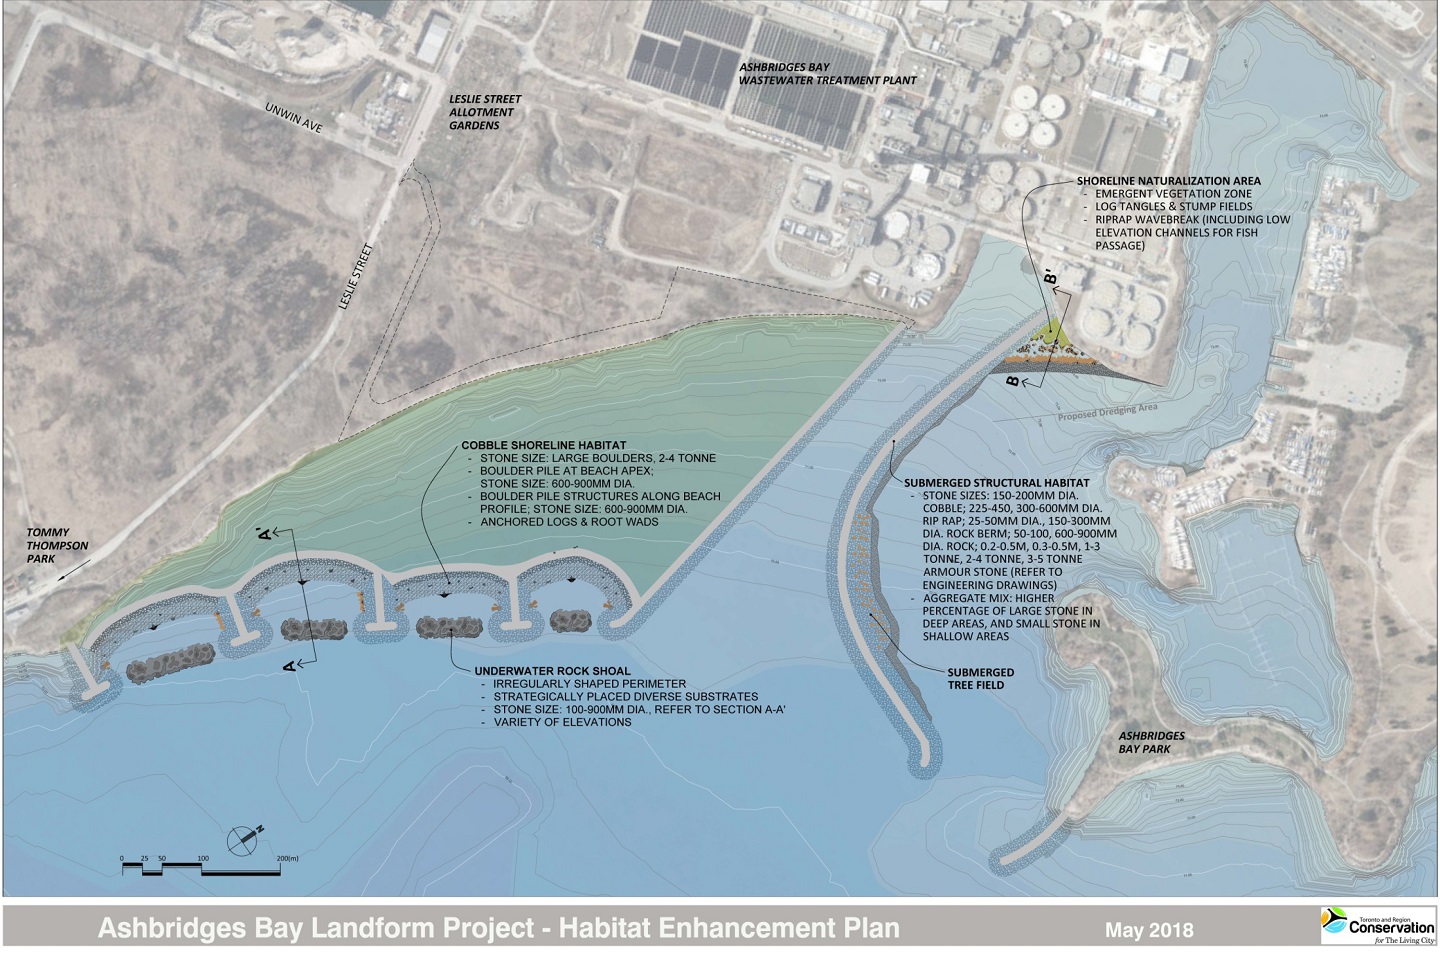 map showing habitat enhancement plan for Ashbridges Bay Landform project